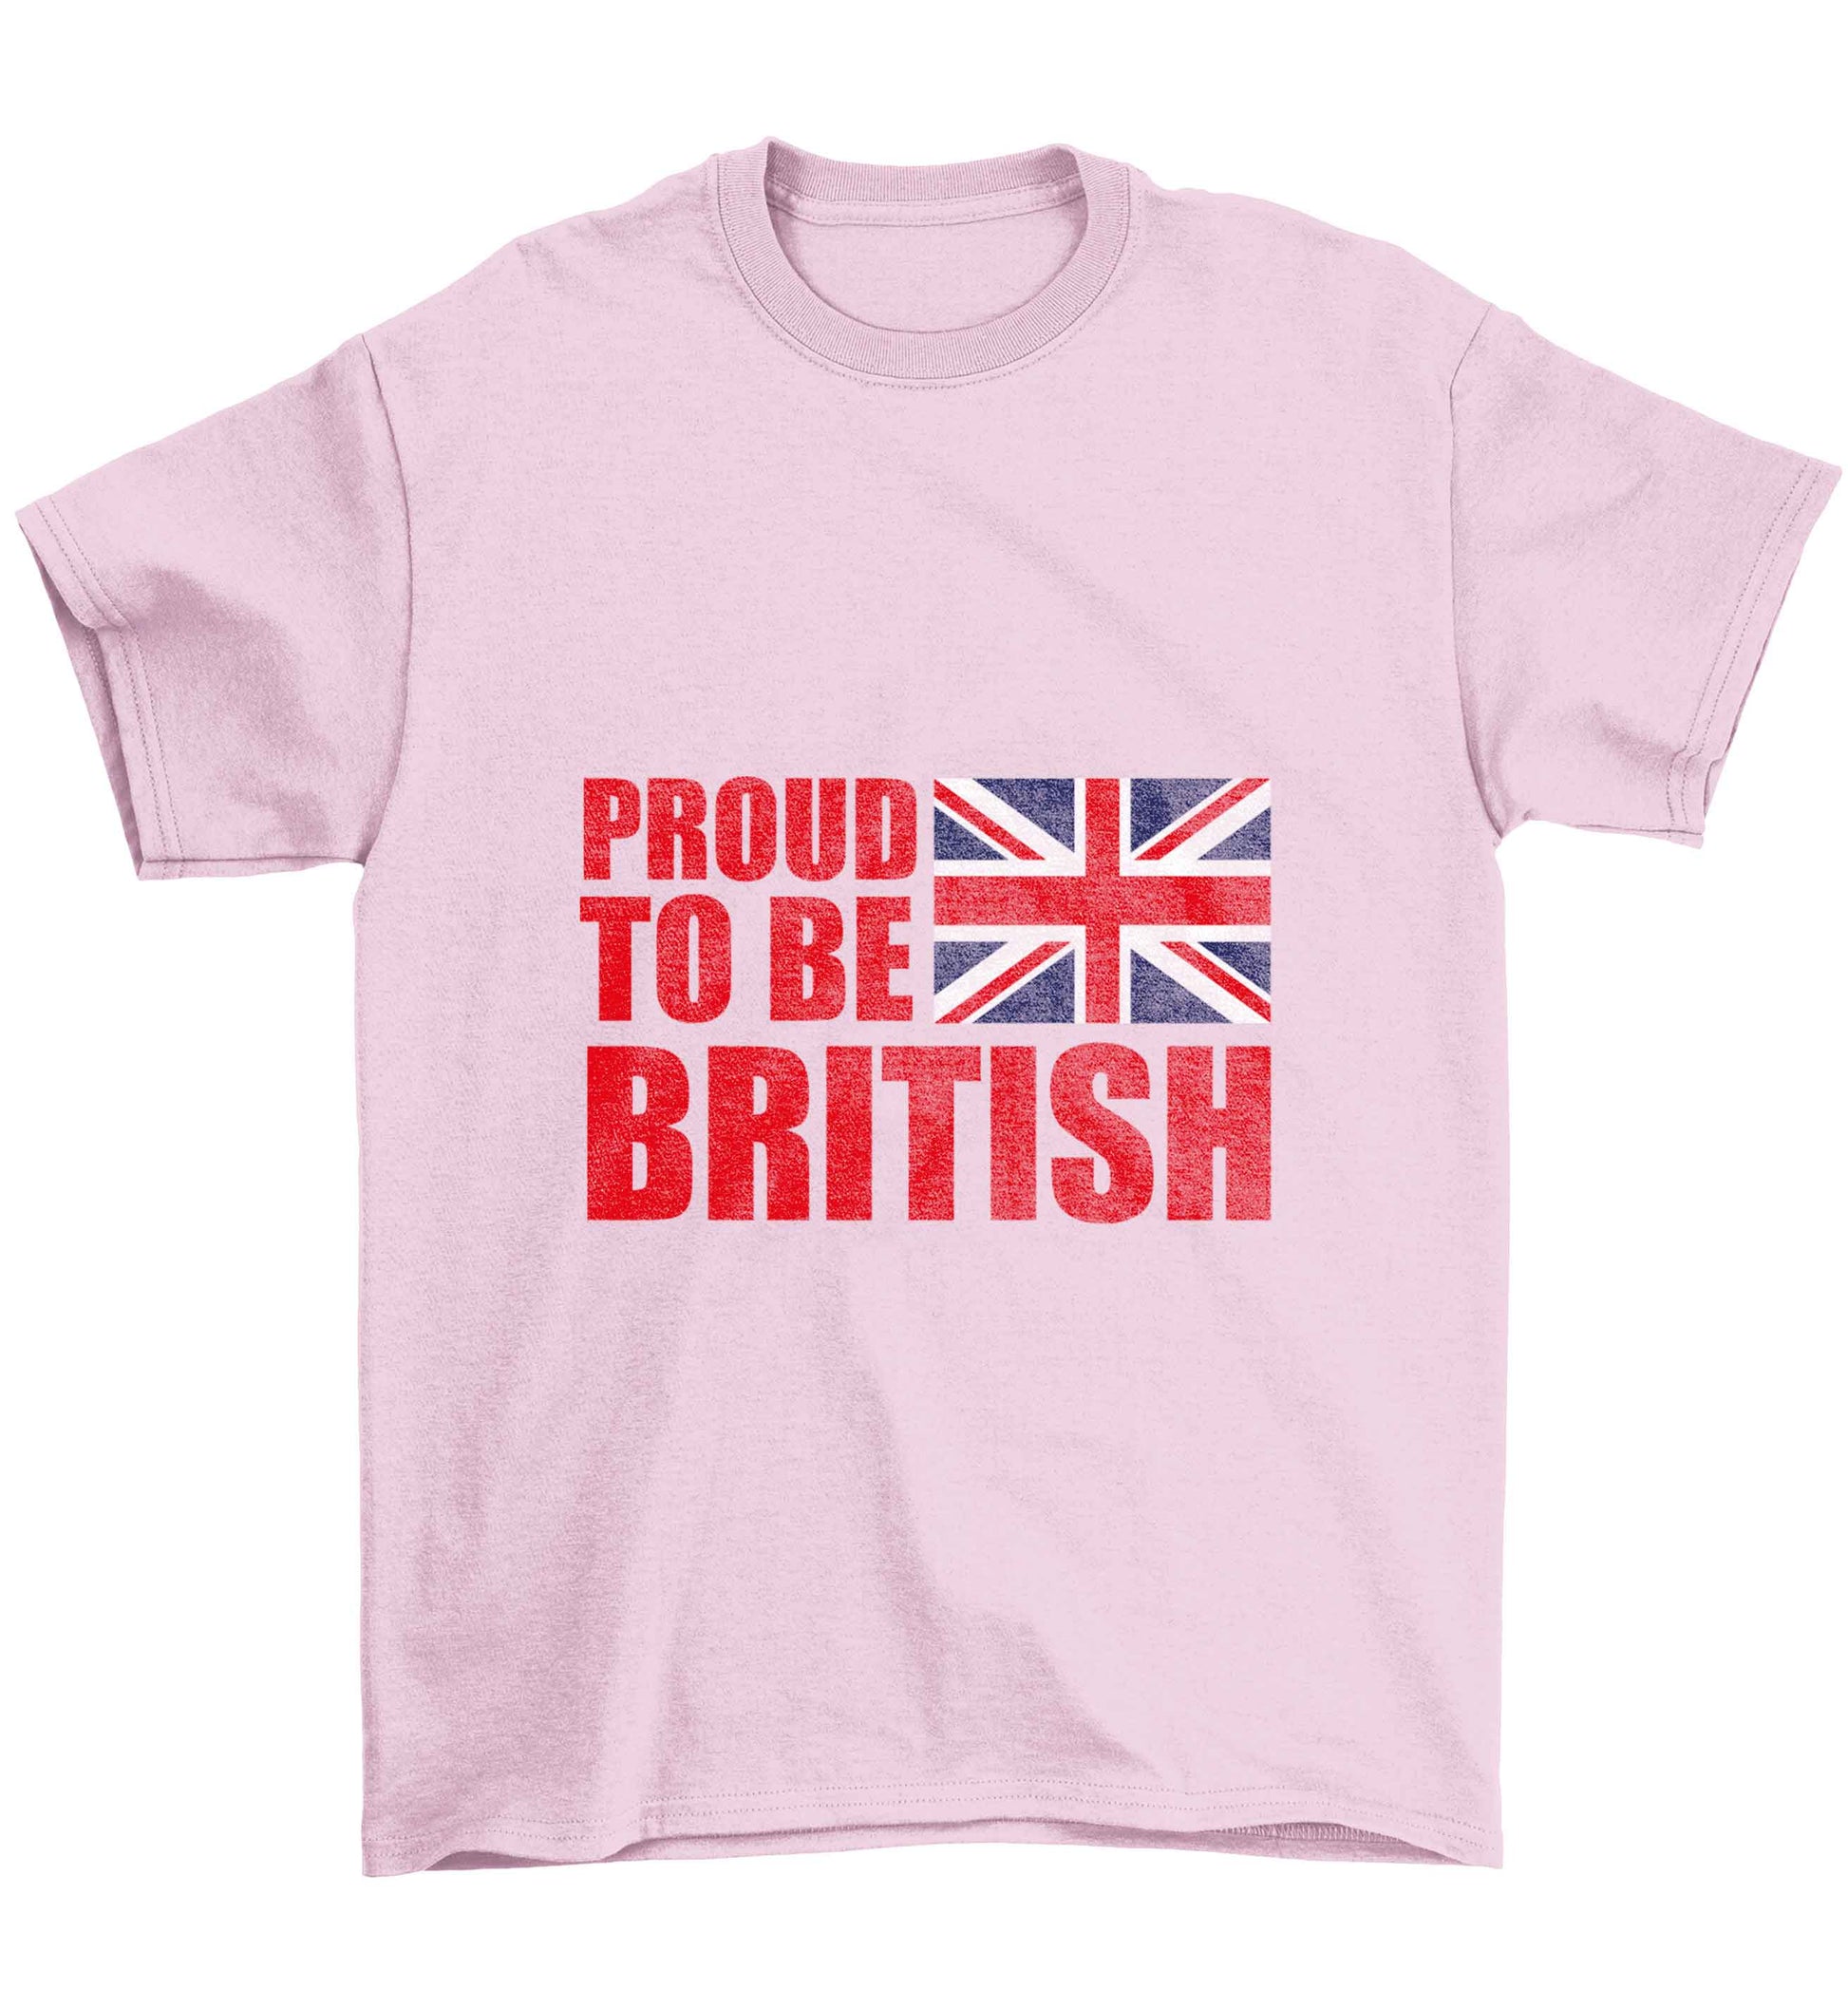 Proud to be British Children's light pink Tshirt 12-13 Years